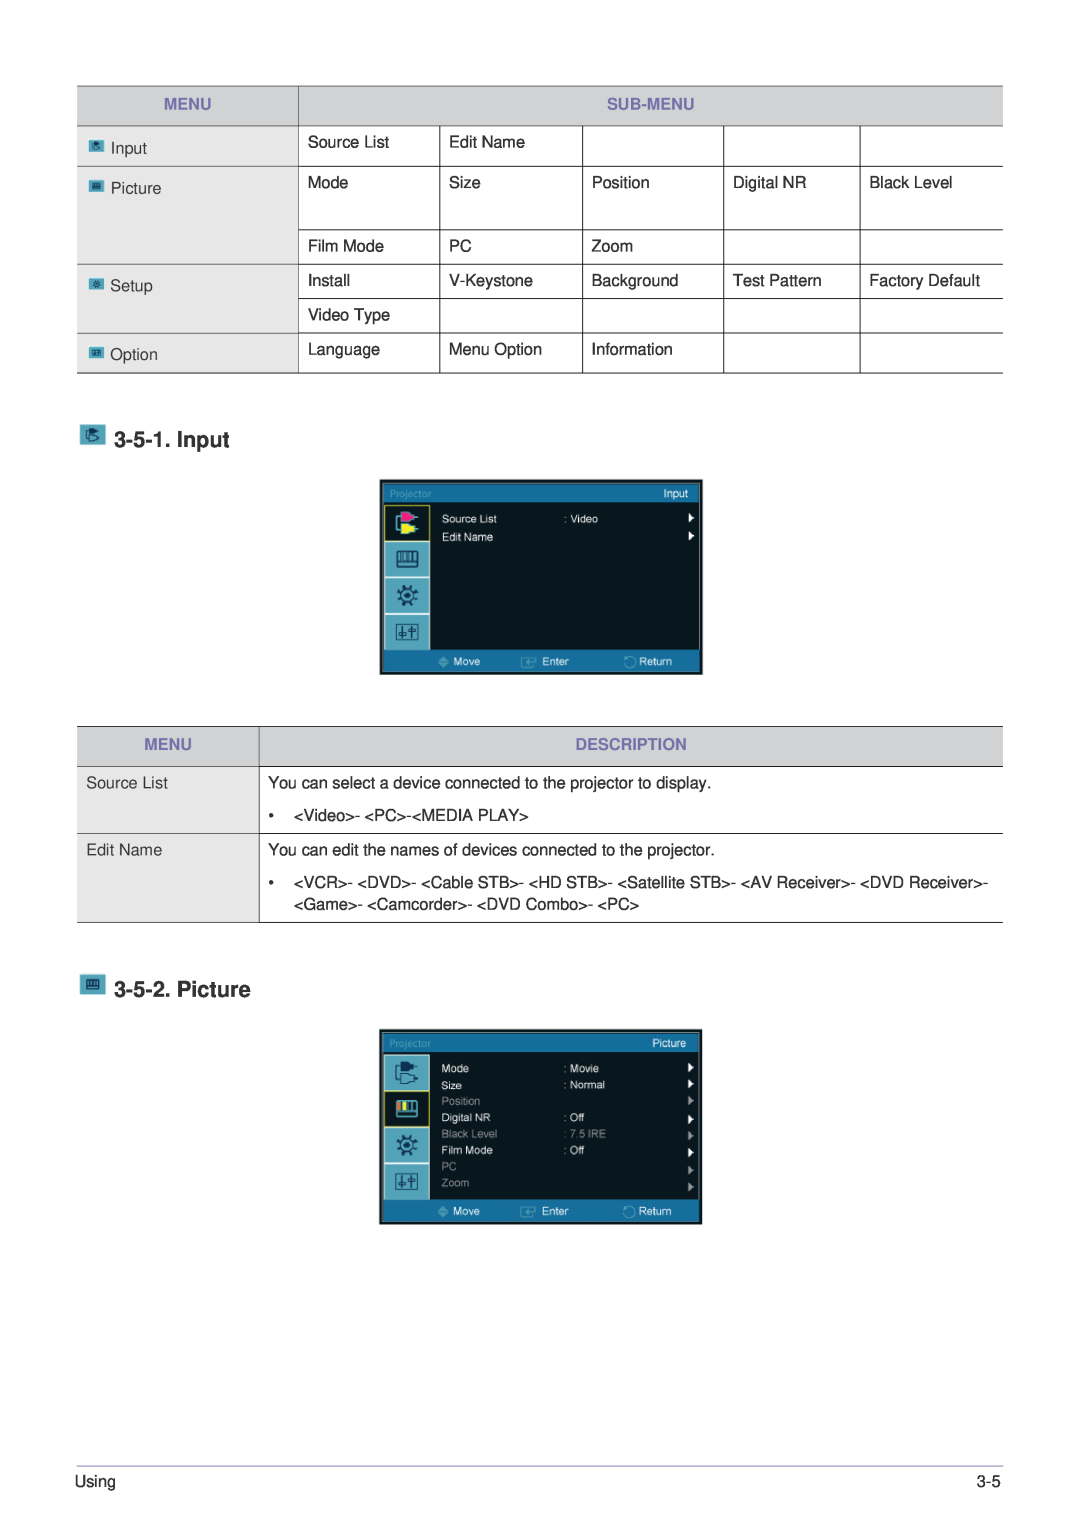 Samsung SP-P410M specifications Input, Picture, Sub-Menu, Description 